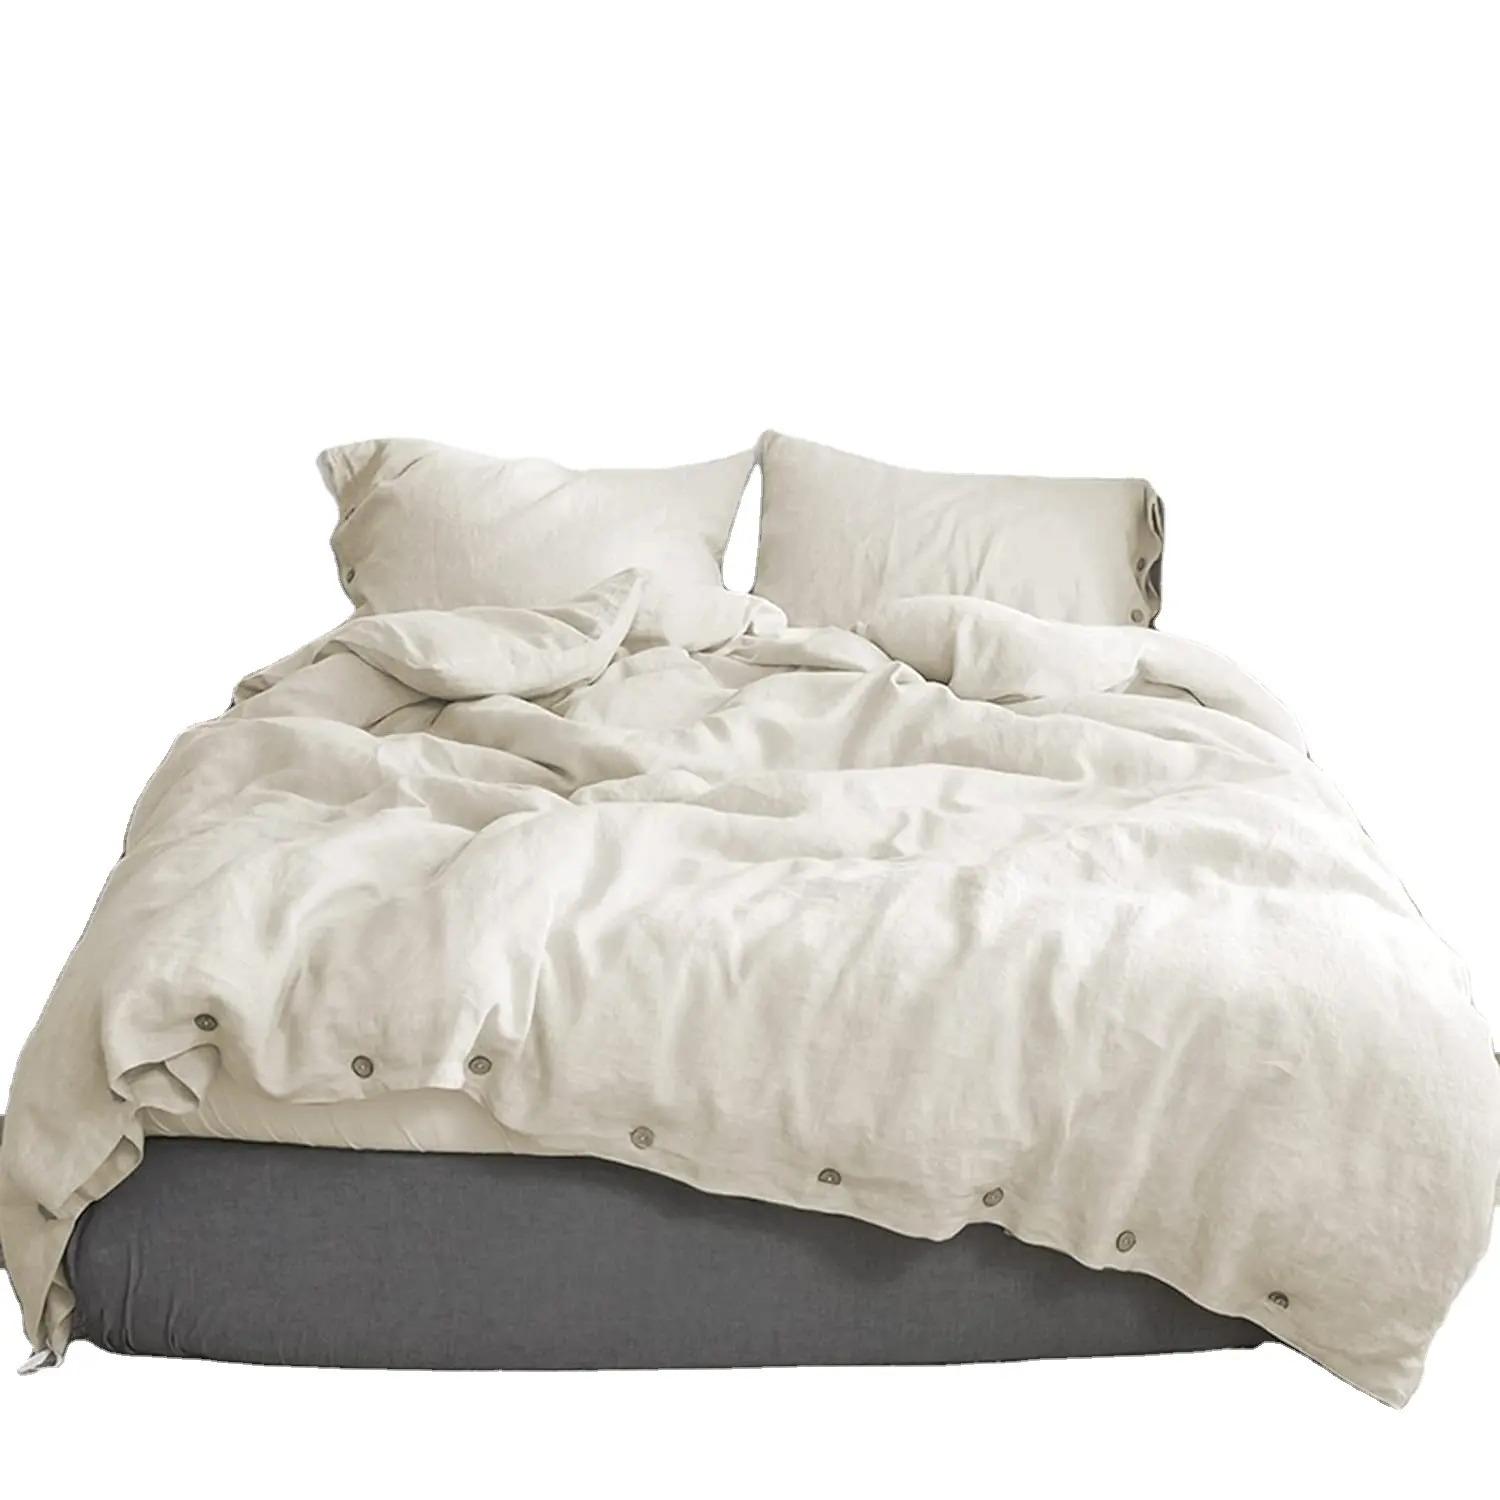 ชุดเครื่องนอนผ้าลินินผ้าป่านขนาดคิงไซส์ผ้าปูเตียงสั่งทำได้